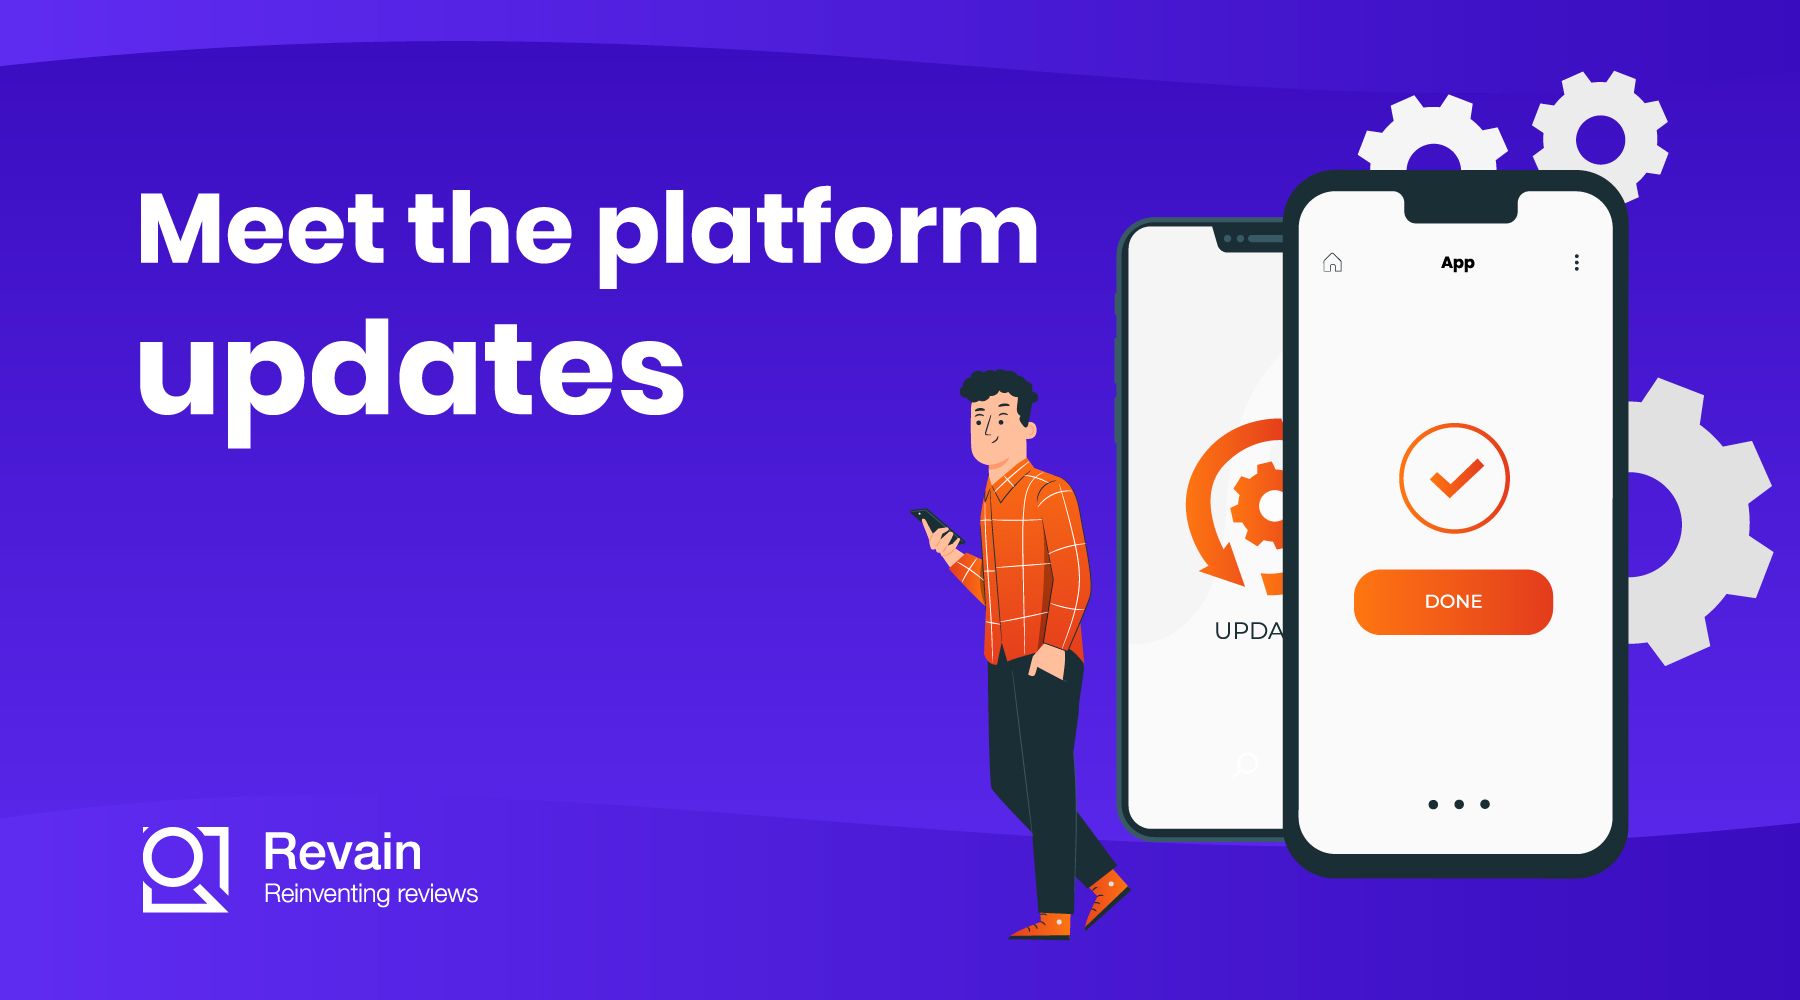 Revainers, meet the platform updates!